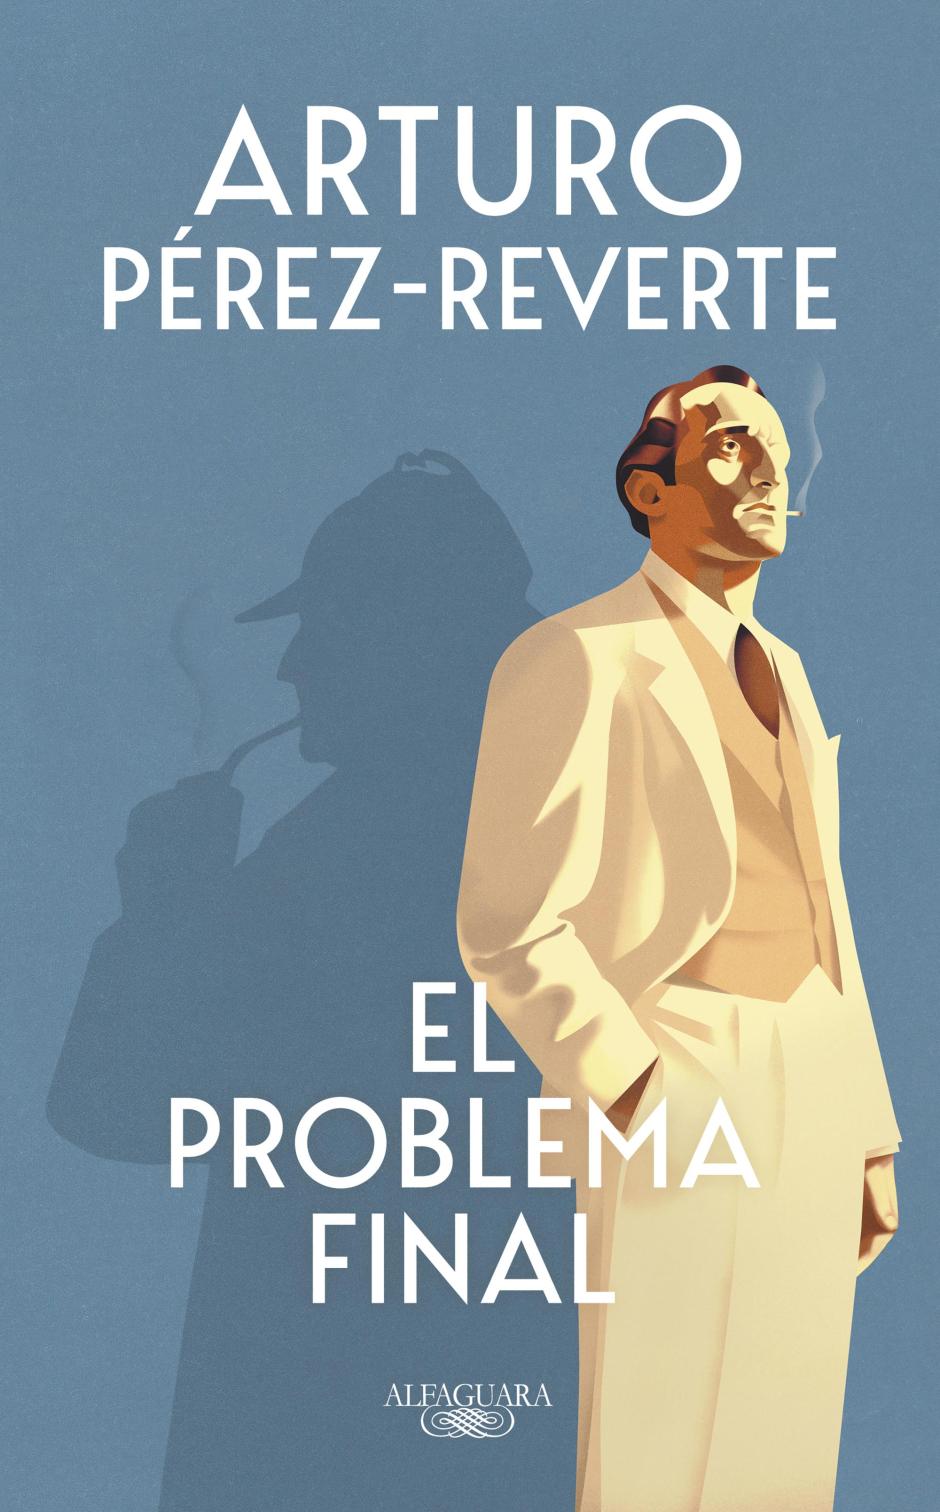 Portada de «El problema final» de Arturo Pérez-Reverte